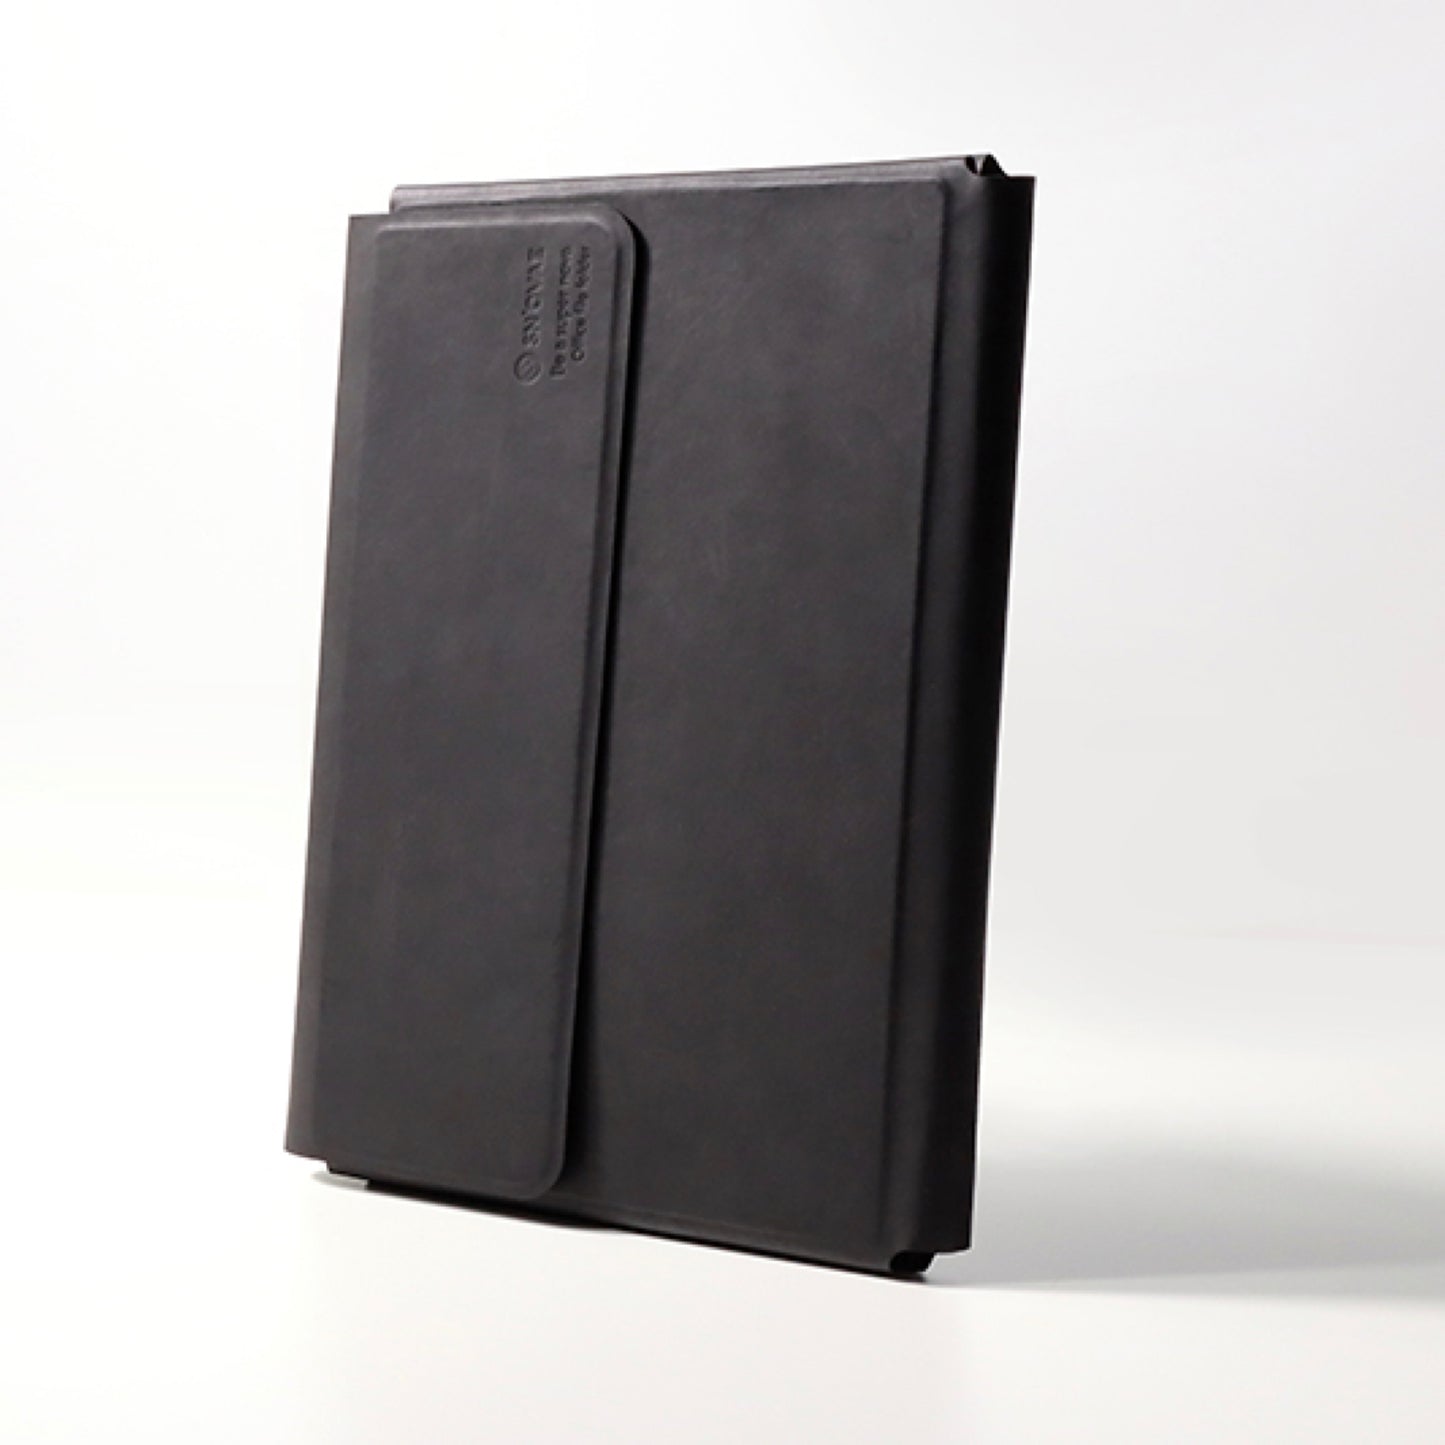 A4サイズの磁力で組み合わせるノートフォルダ「A4 office folder」